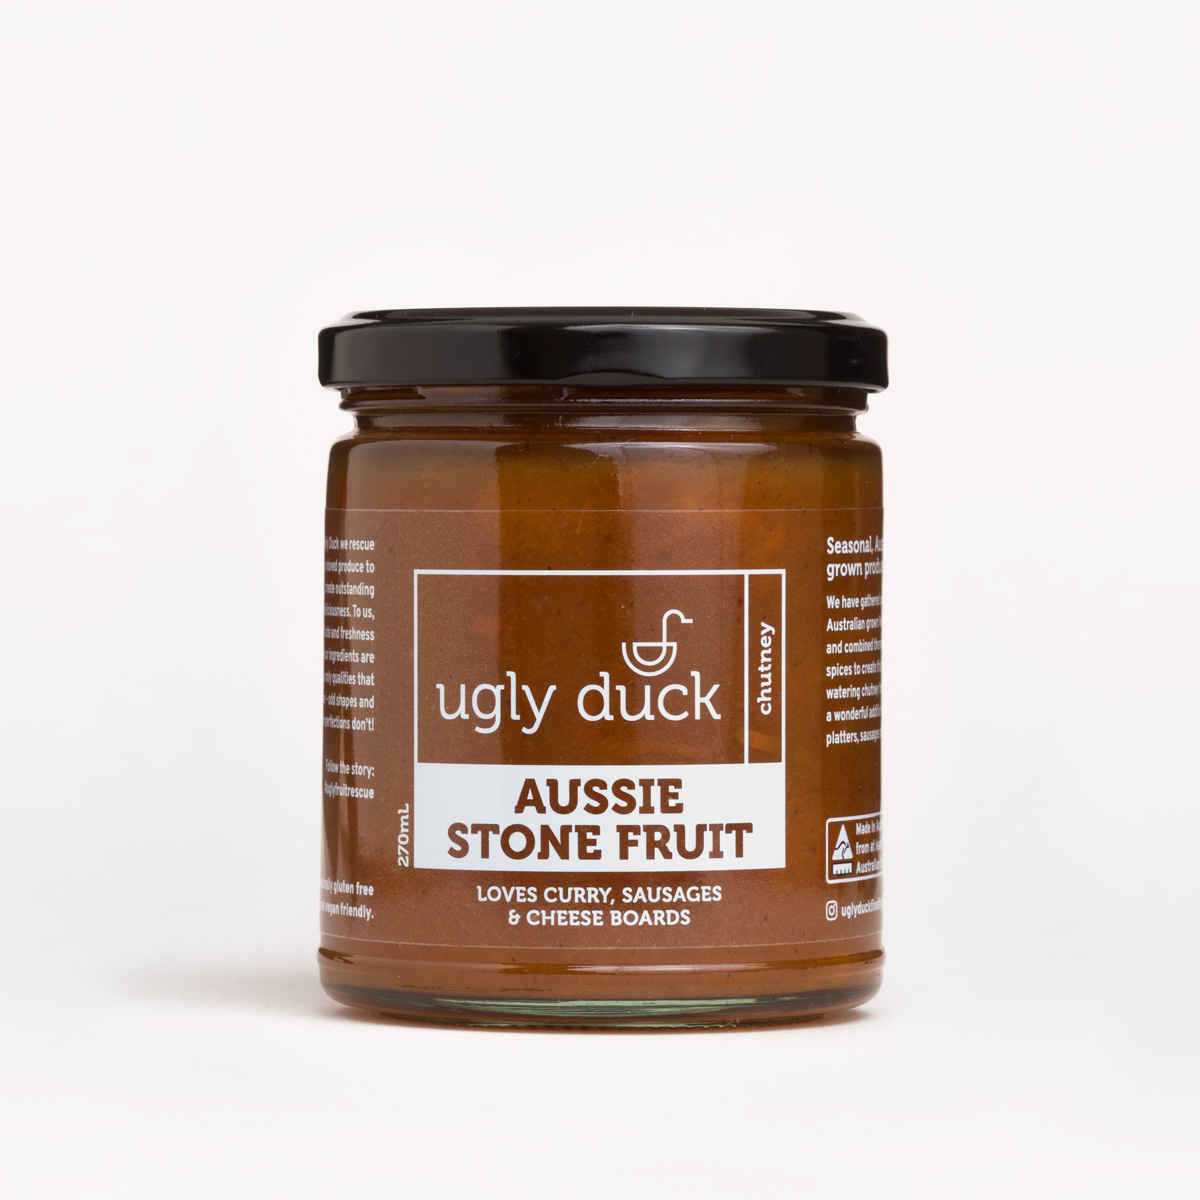 Aussie Stone Fruit Chutney jar with label